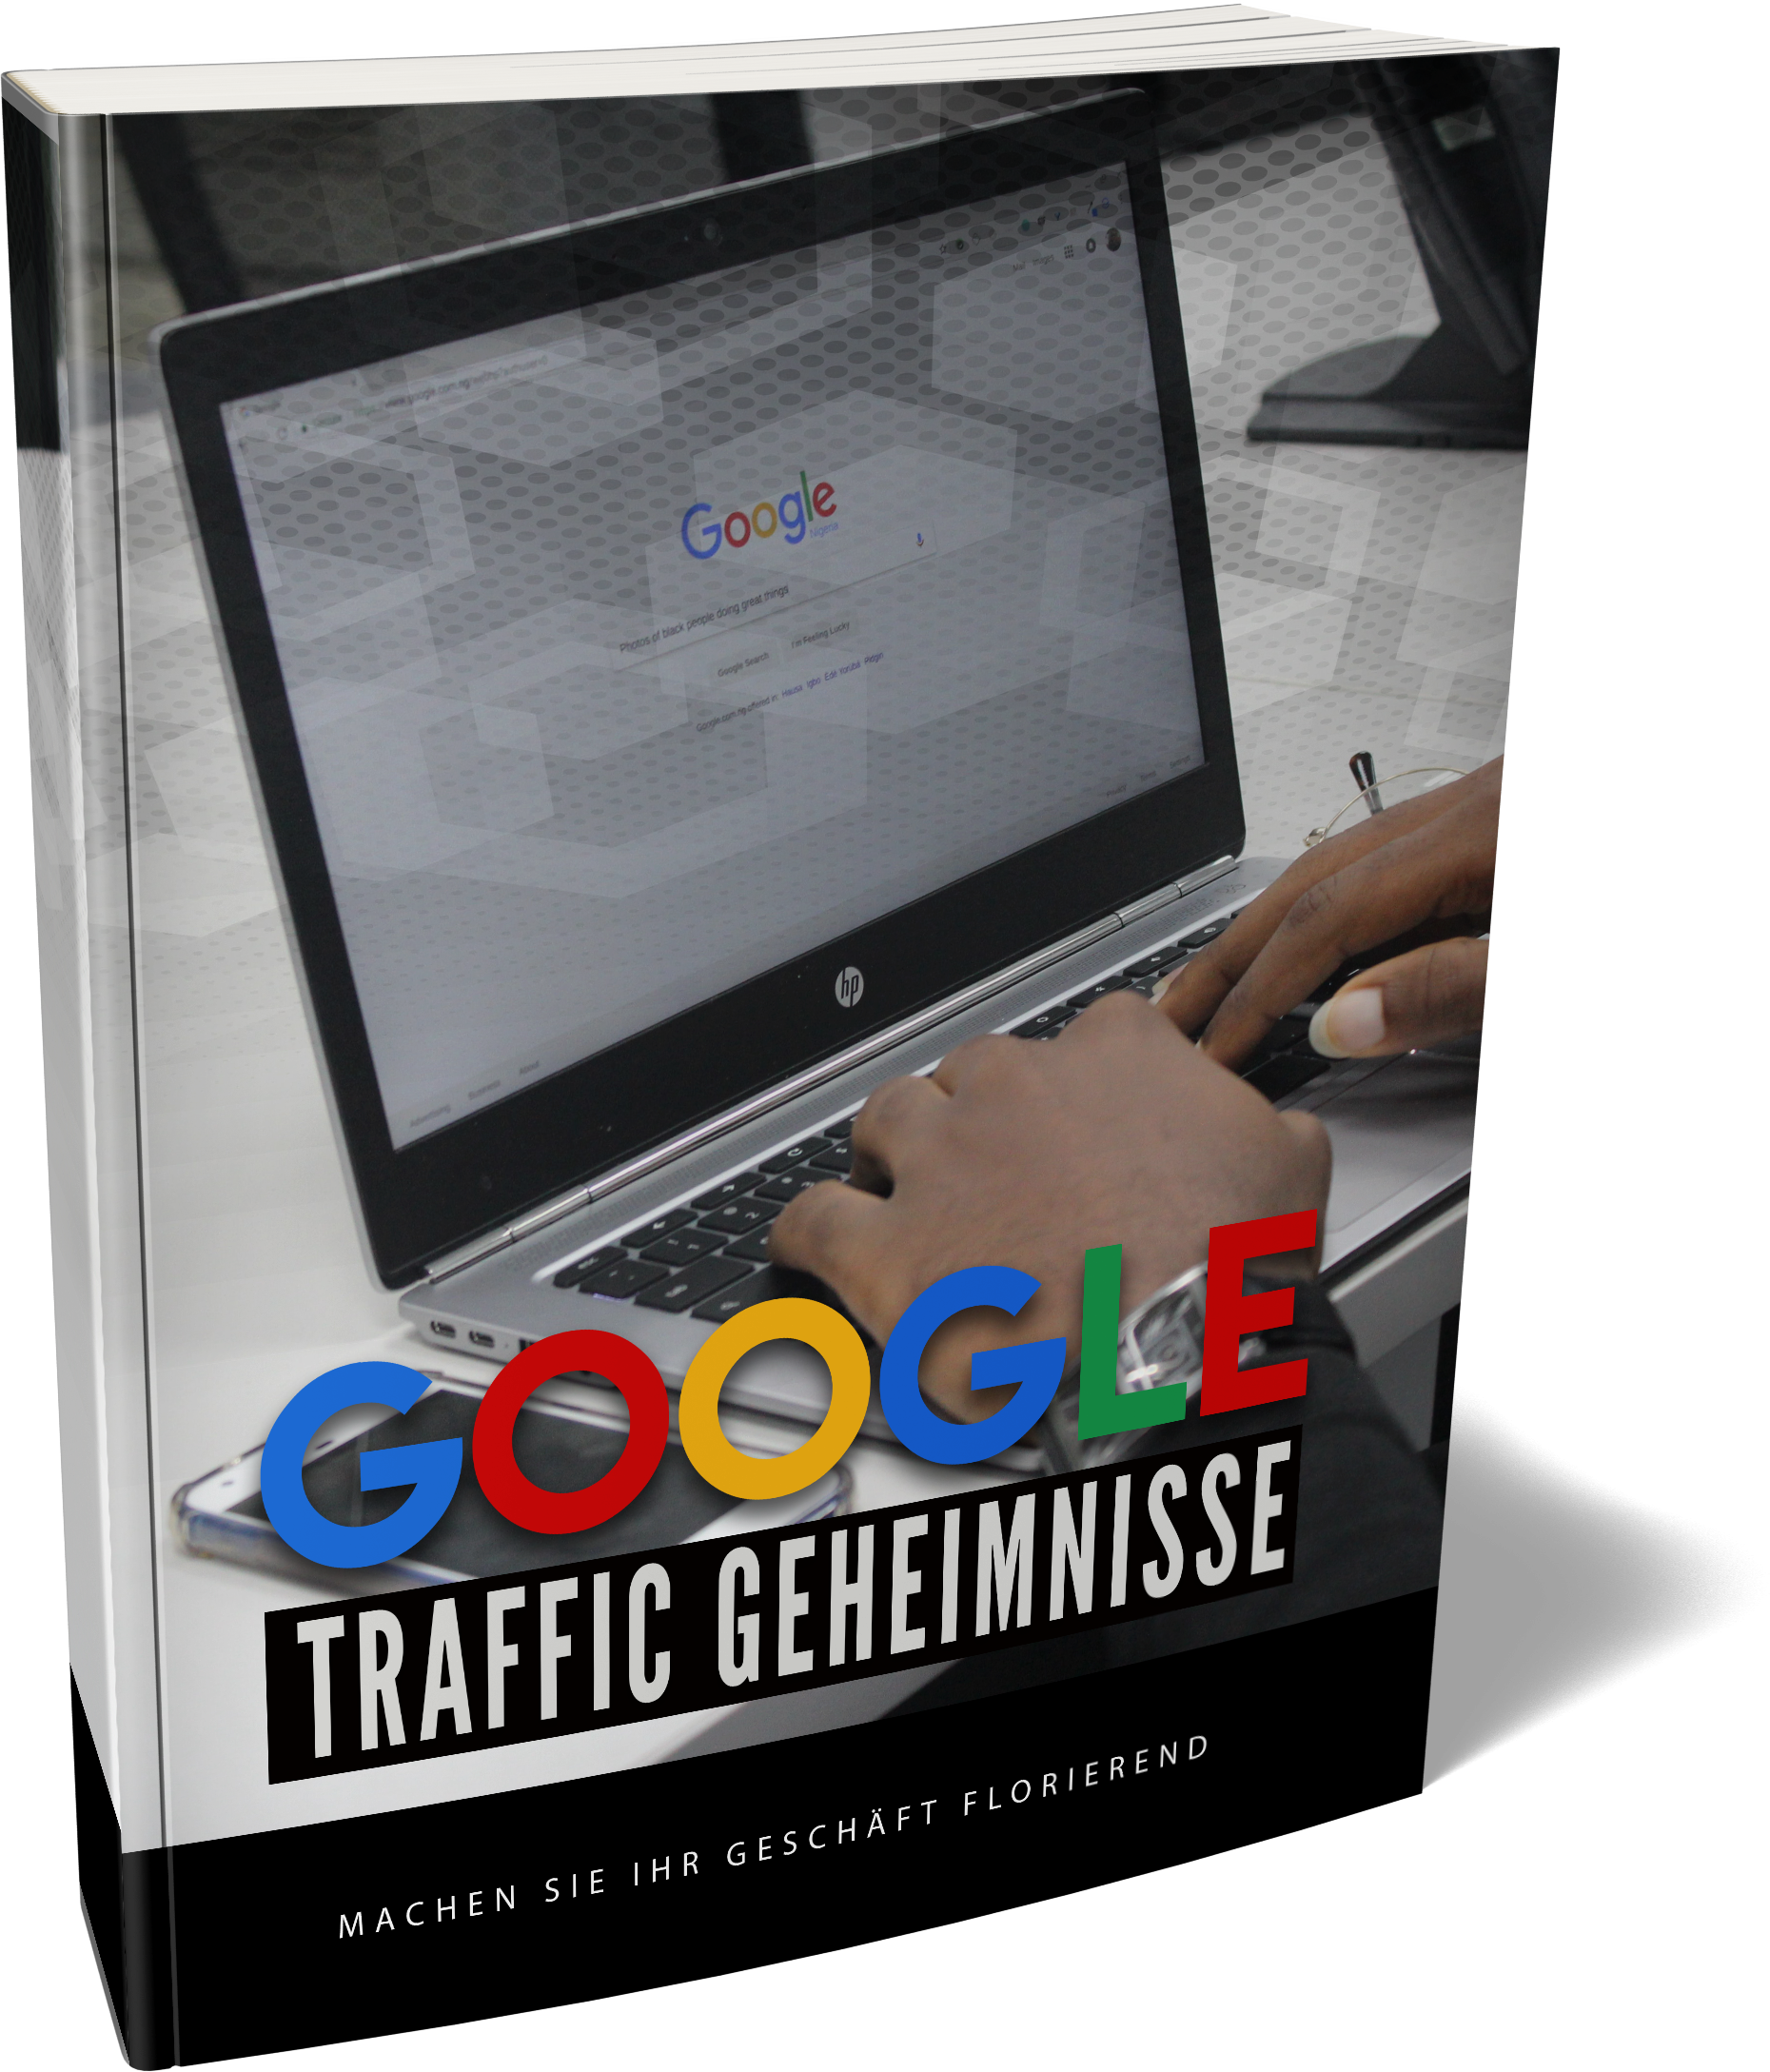 Google Traffic Geheimnisse
 